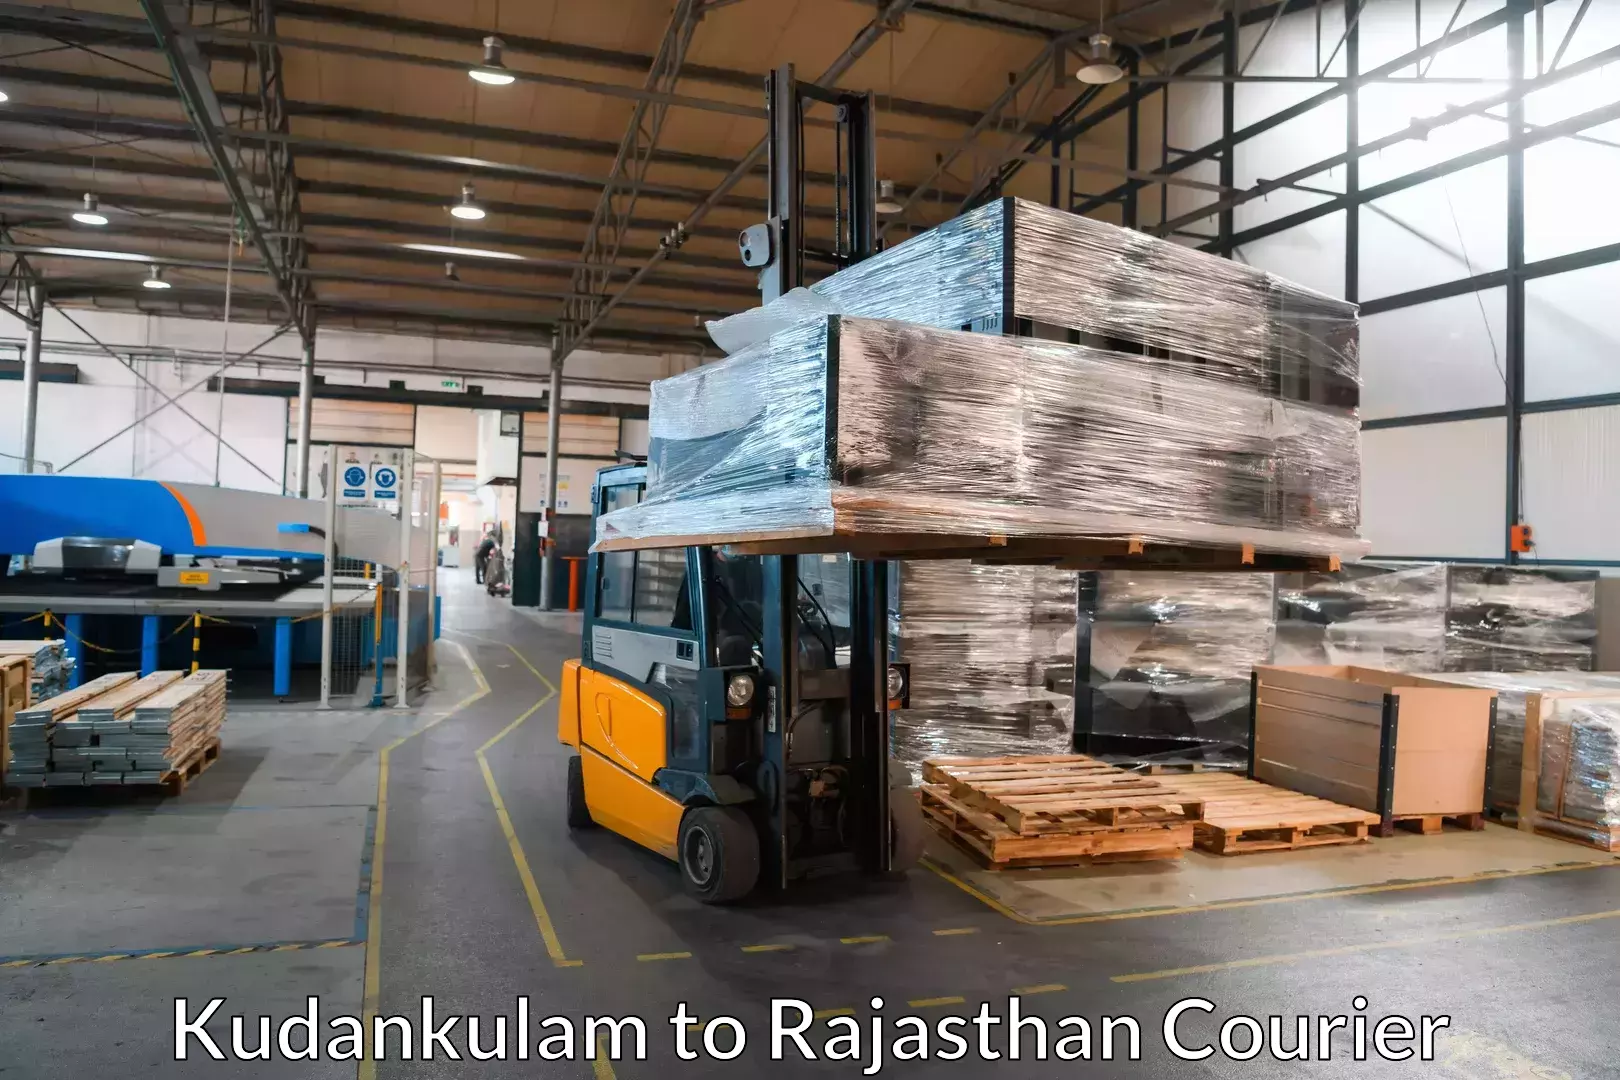 Furniture transport experts Kudankulam to Nagar